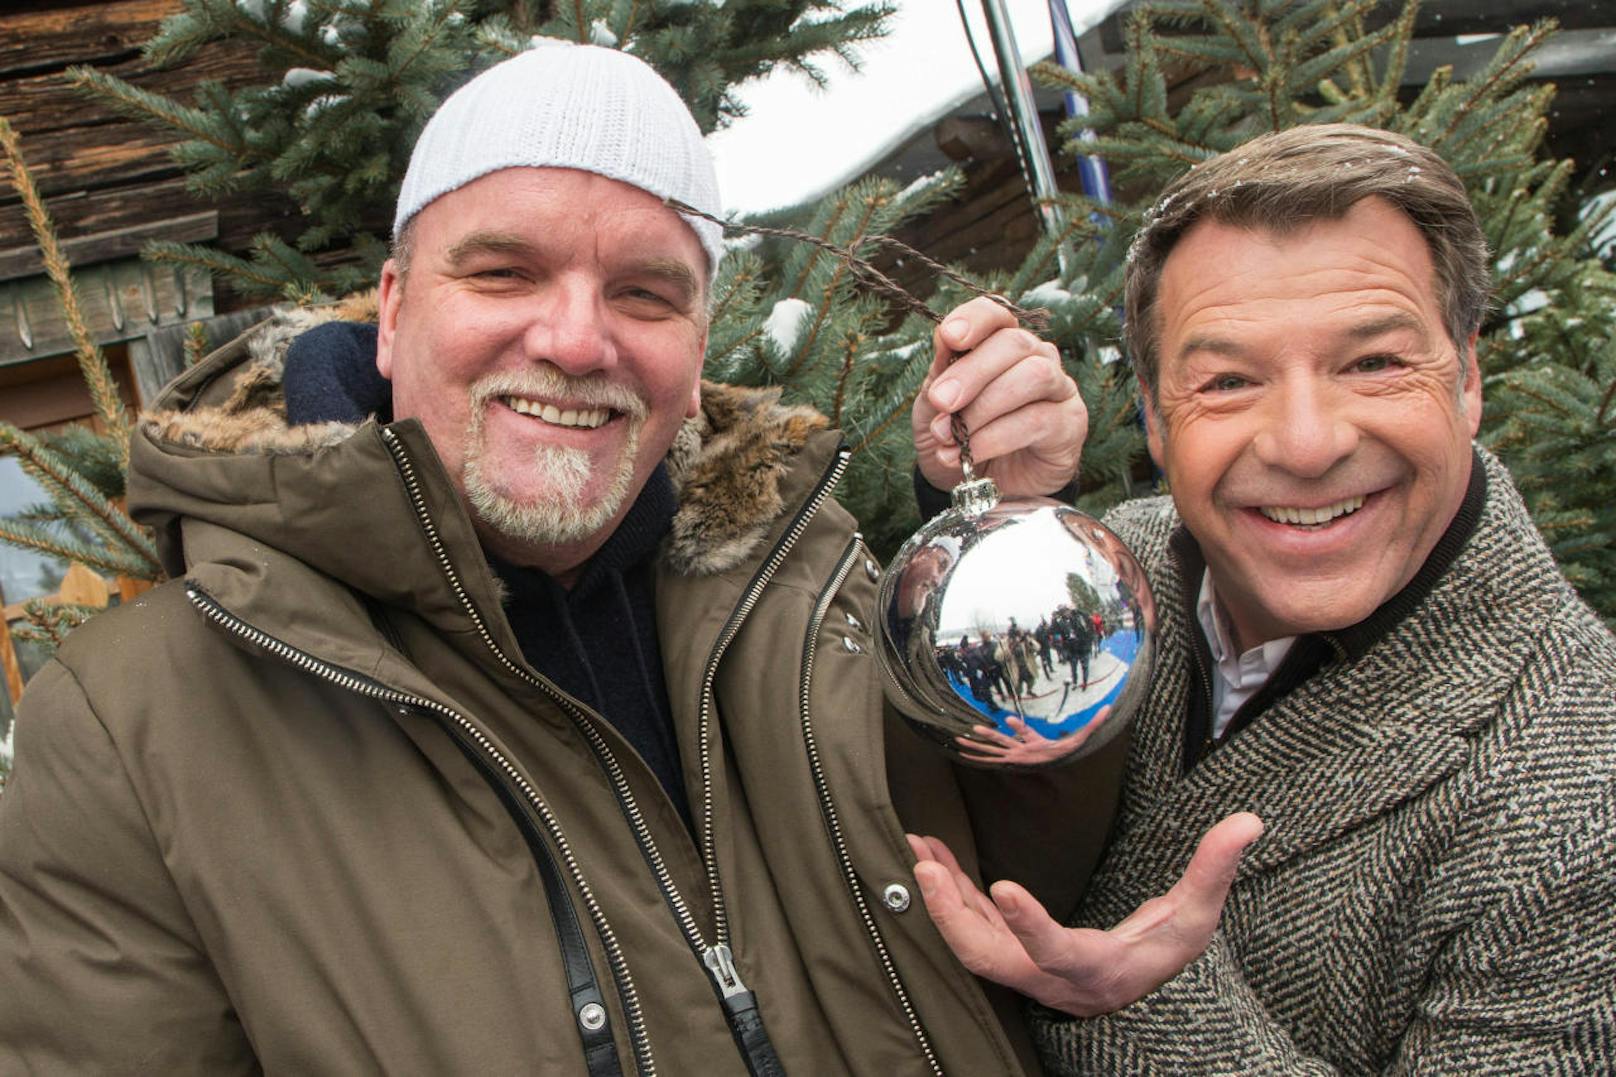 DJ Ötzi und Patrick Lindner bei der Aufzeichnung zur Filmproduktion "Zauberhafte Weihnacht im Land der Stillen Nacht" in Flachau